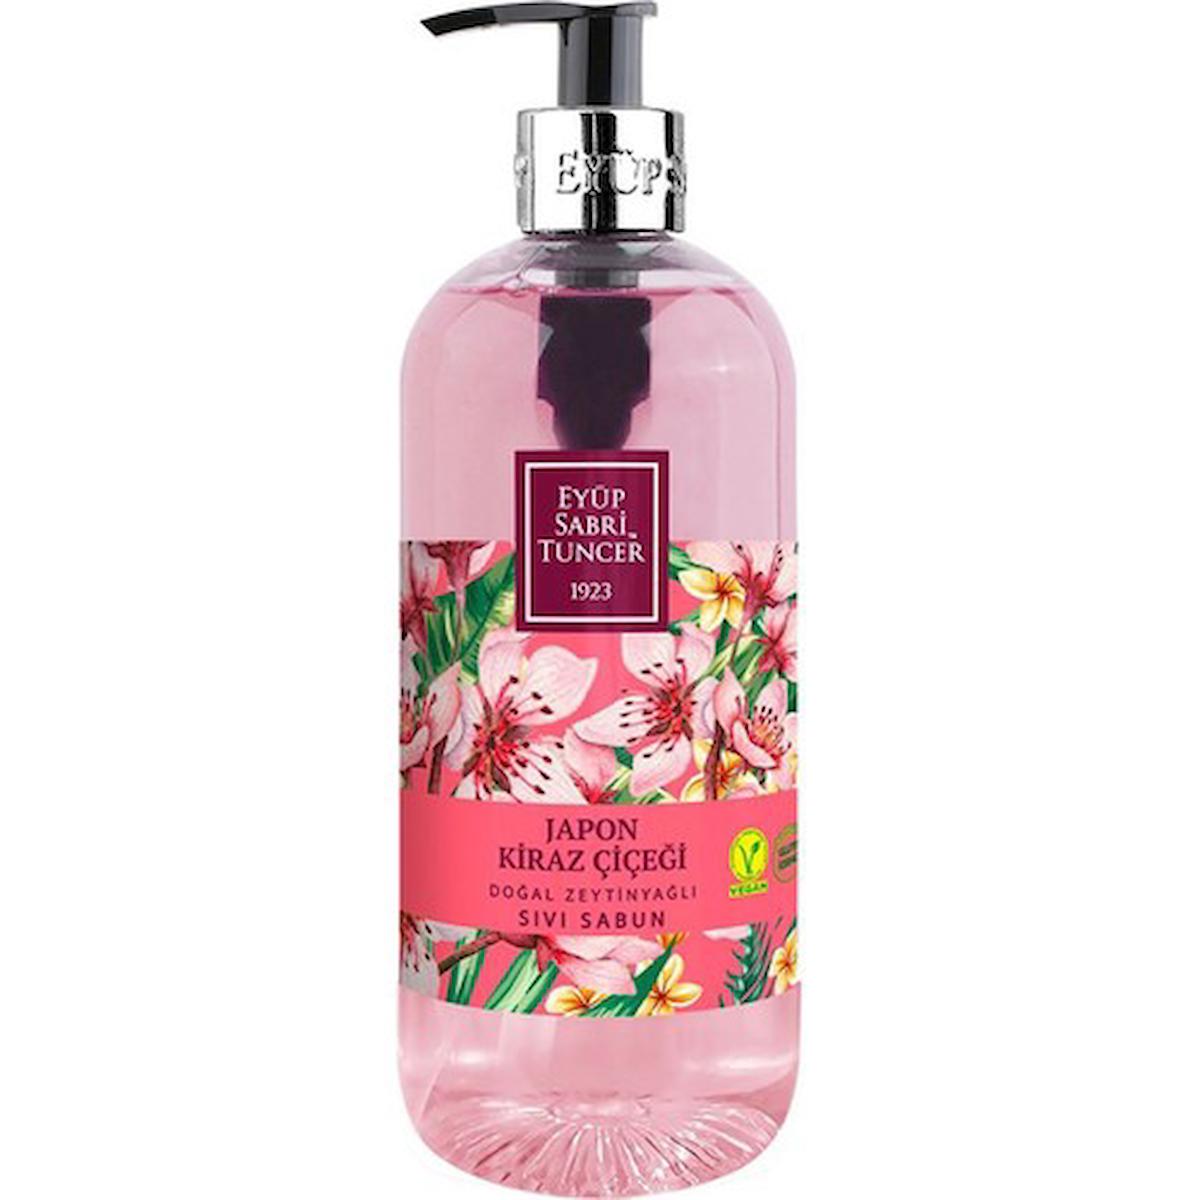 Eyüp Sabri Tuncer Japon Kiraz Çiçeği Nemlendiricili Sıvı Sabun 500 ml Tekli